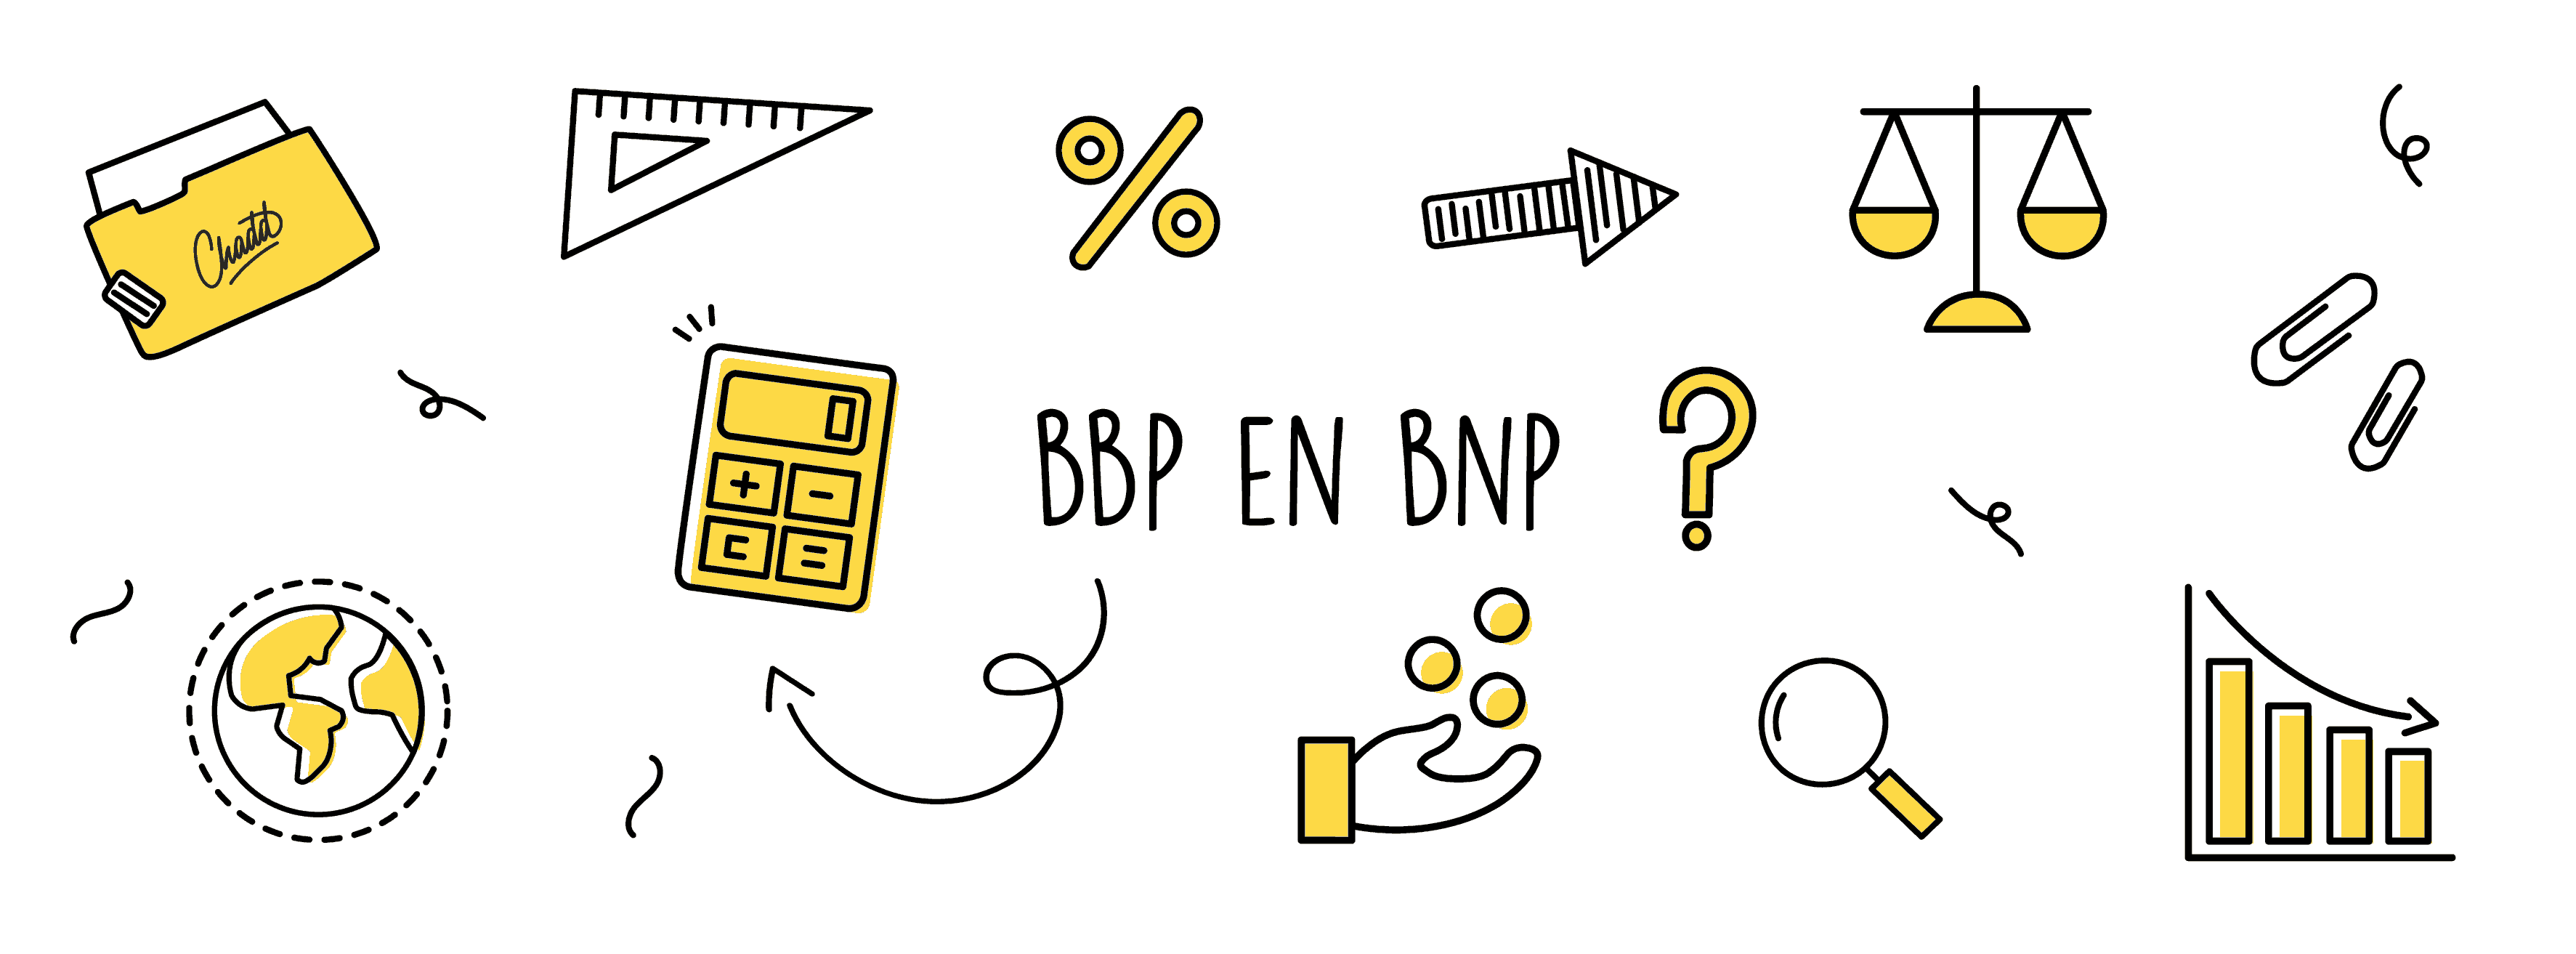 BBP en BNP